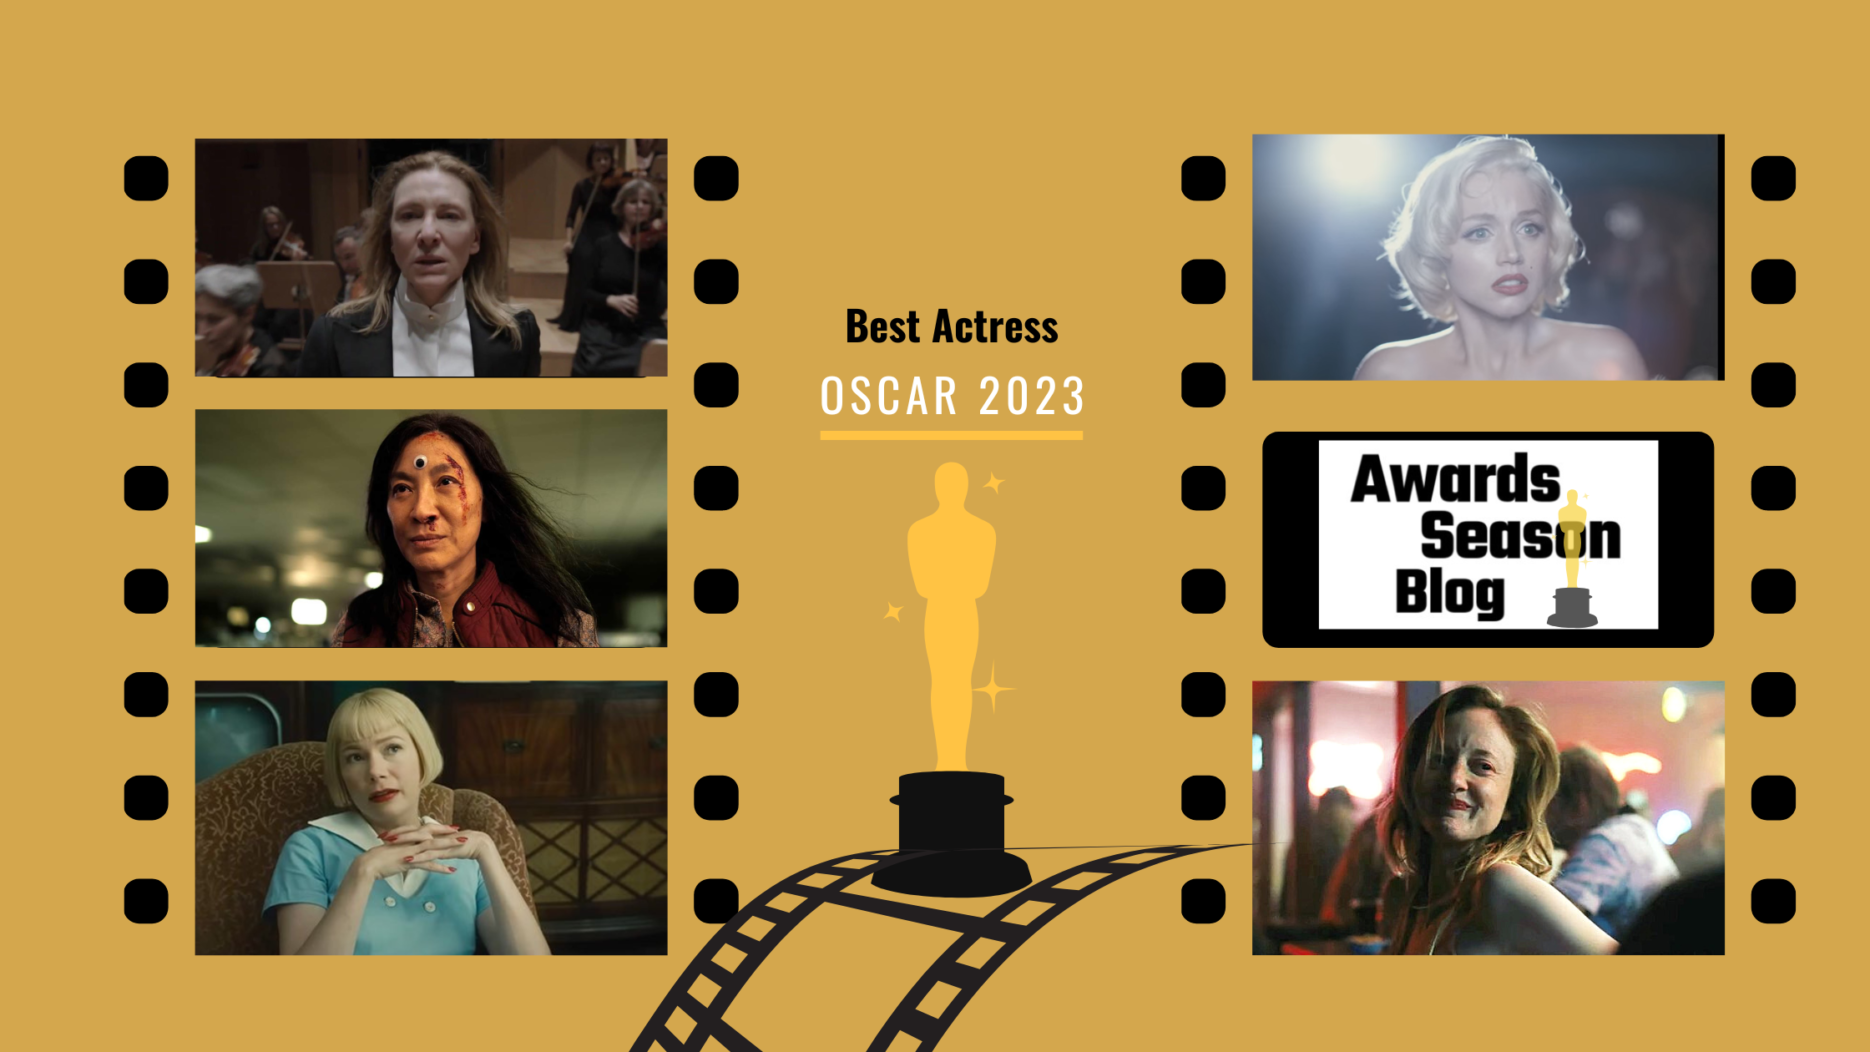 Previsioni Oscar 2023 Miglior Attrice: Michelle Yeoh vs Cate Blanchett